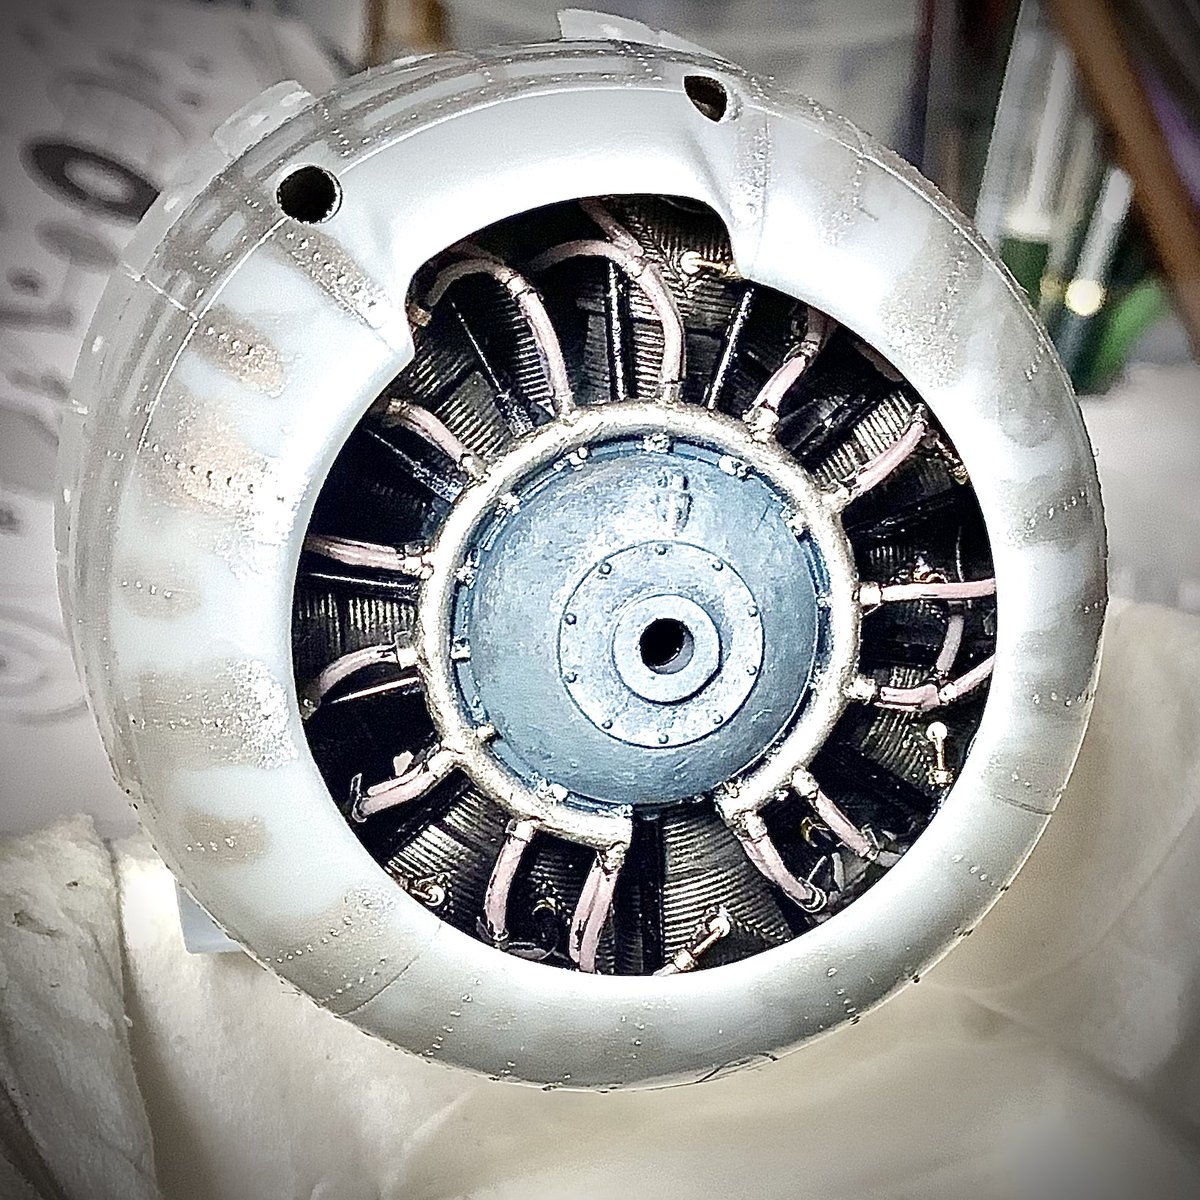 #サンニイ鐘馗制作記録 エンジンの塗り分け前とその後と仮組みで載せて見たところ。 やはりあんまり見えない😂